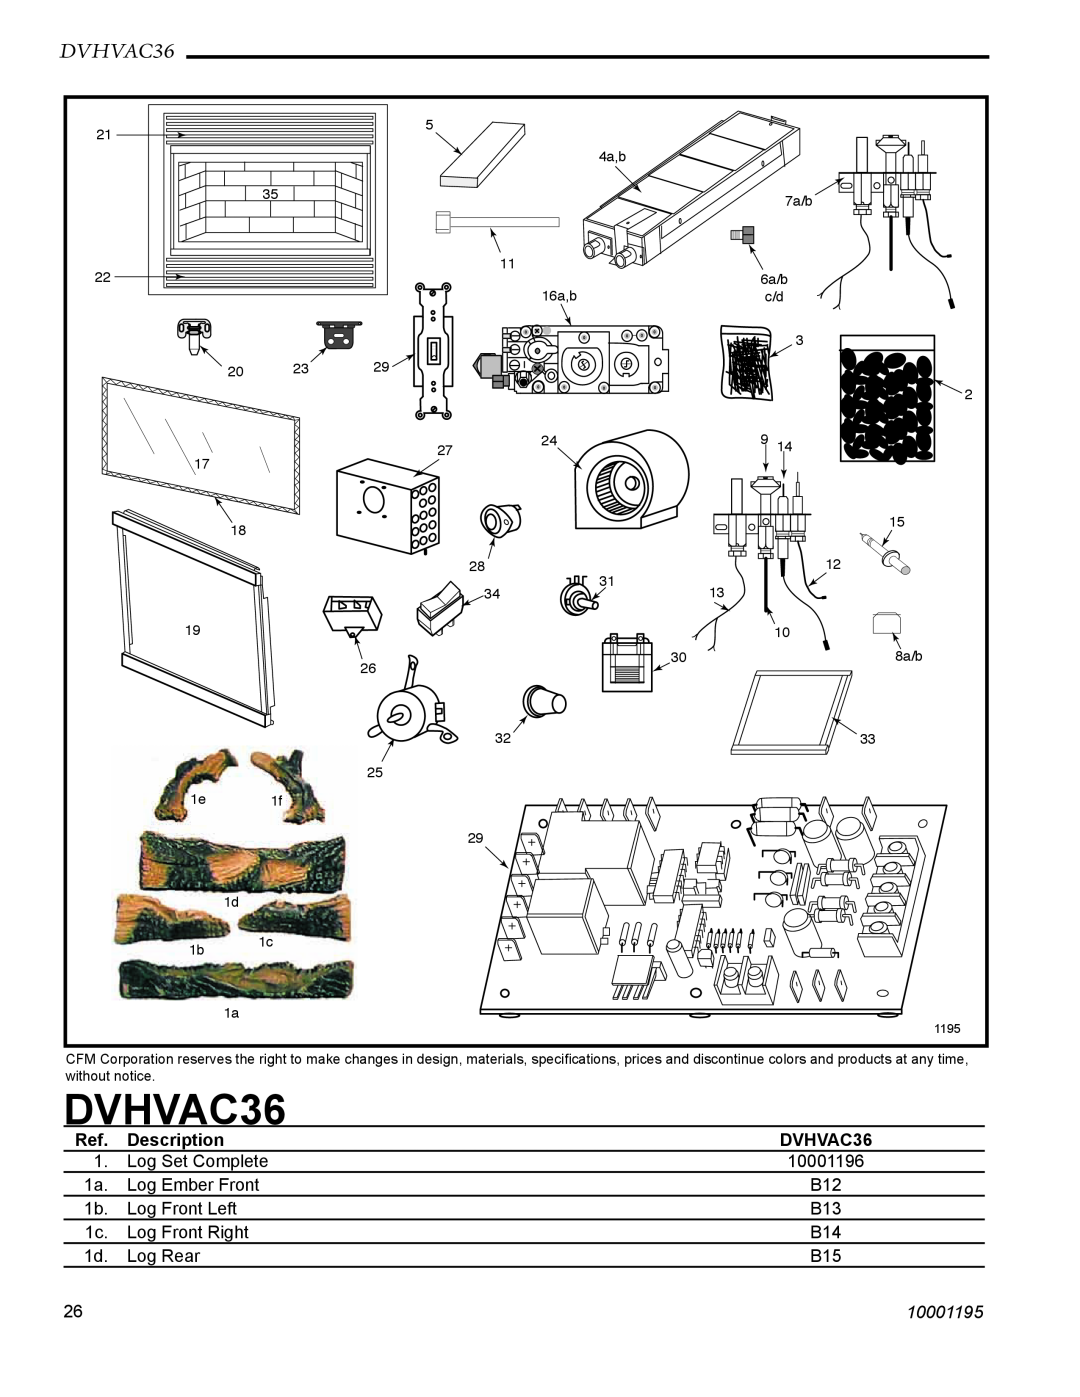 Vermont Casting DVHVAC36 manual Description, 10001195 